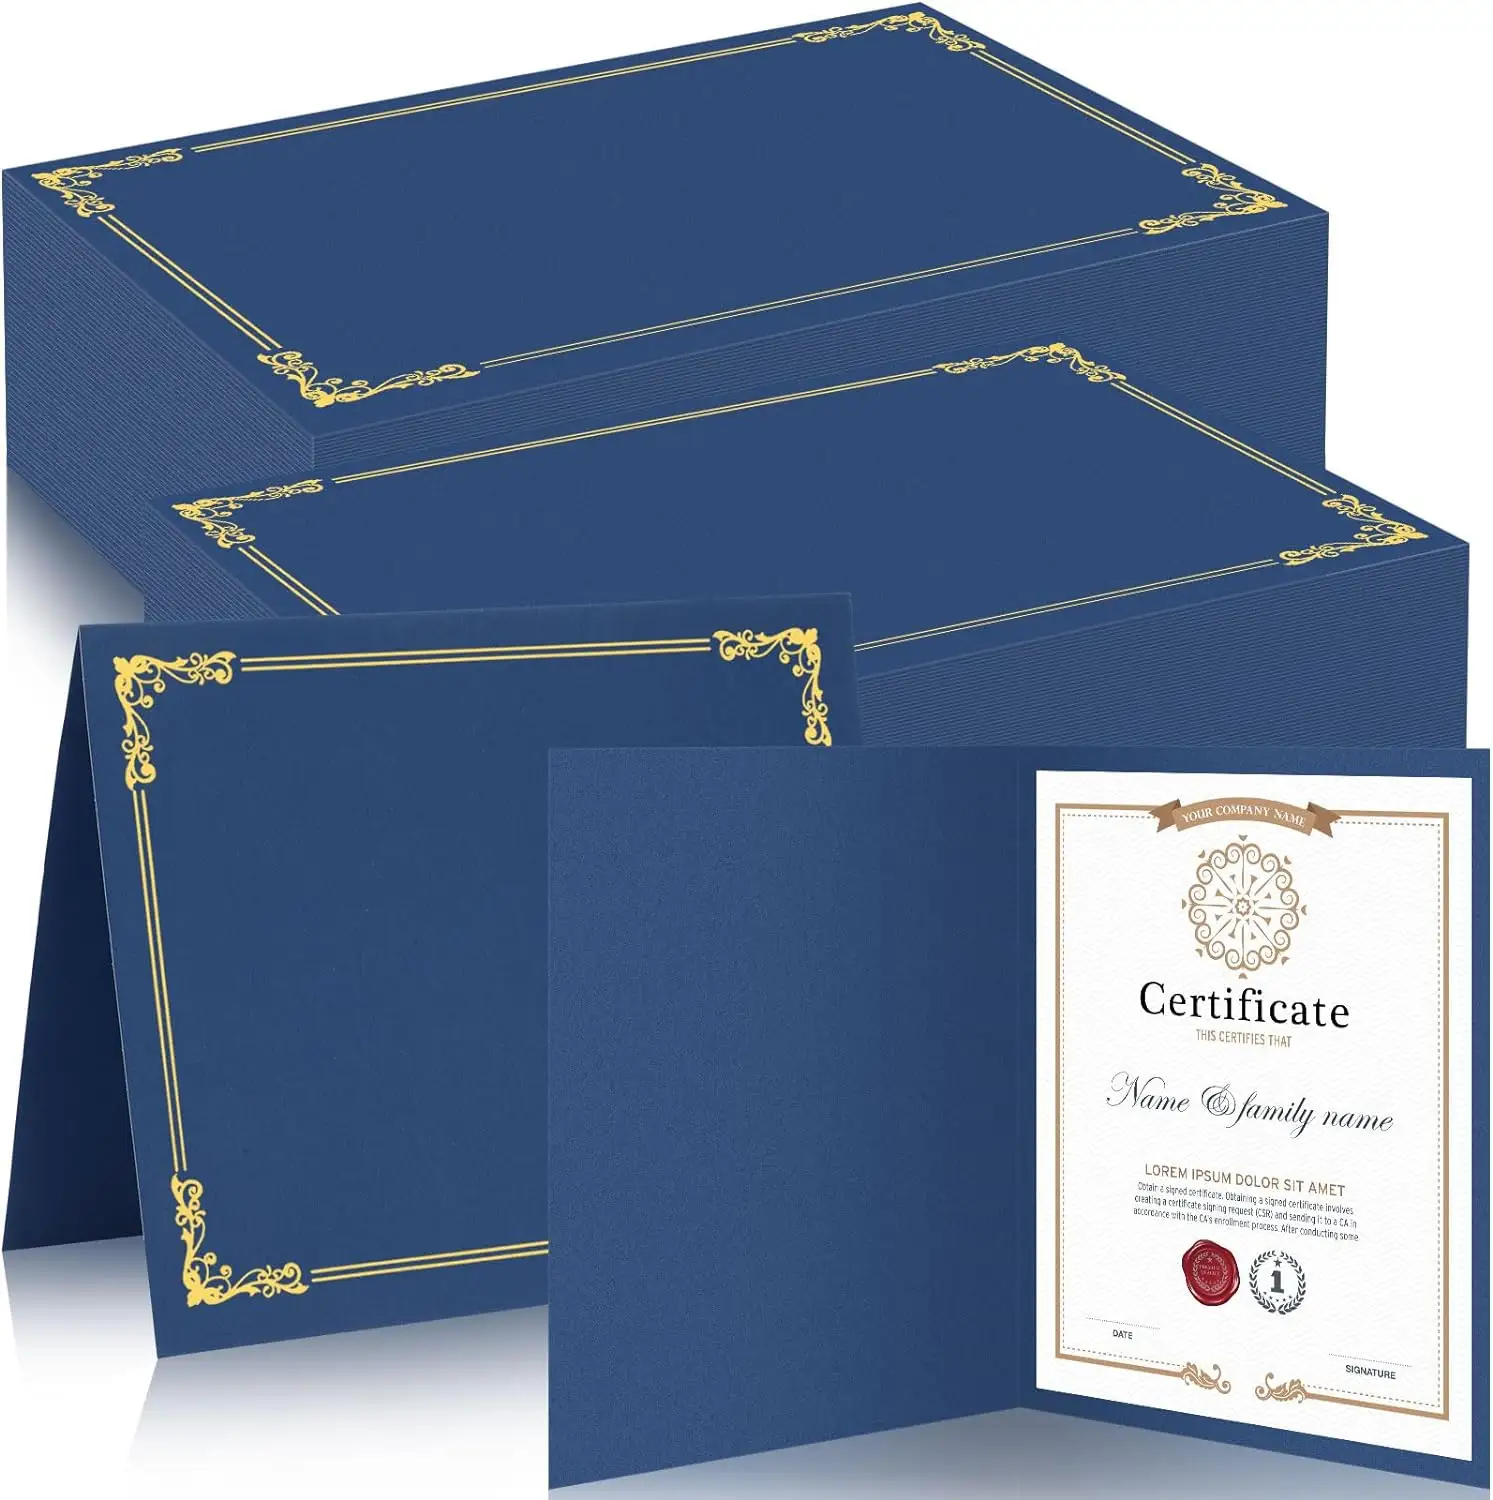 बल्क ब्लू ग्रेजुएशन कवर 300 जीएसएम डिप्लोमा धारक पुरस्कार डिप्लोमा प्रमाणपत्र आस्तीन धारक फ़ोल्डर पत्र आकार प्रमाणपत्रों के लिए